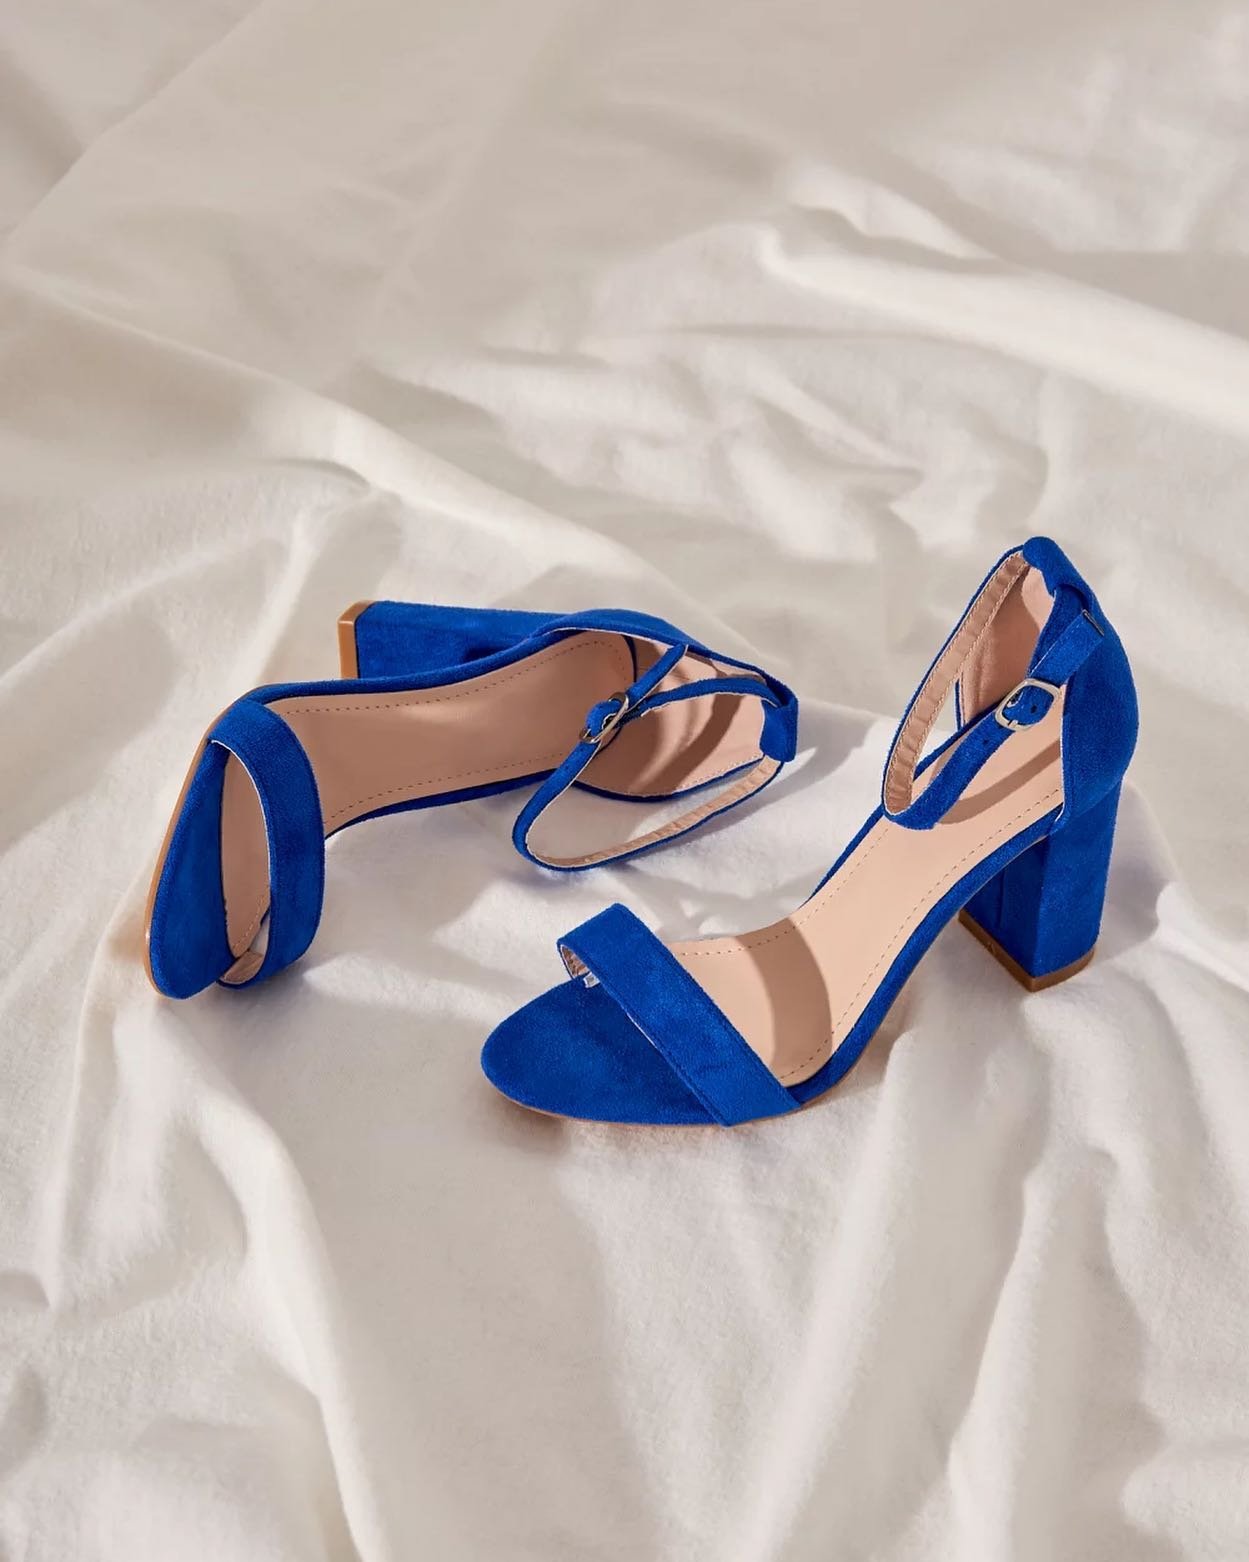 Oživ svoj letný outfit sandálkami vo výraznej farbe 💙 náš dnešný tip je kráľovská modrá 😉

#glash #glashsk #ohmyglash #fashion #onlinestore #slovakia #nitra #bratislava #zilina